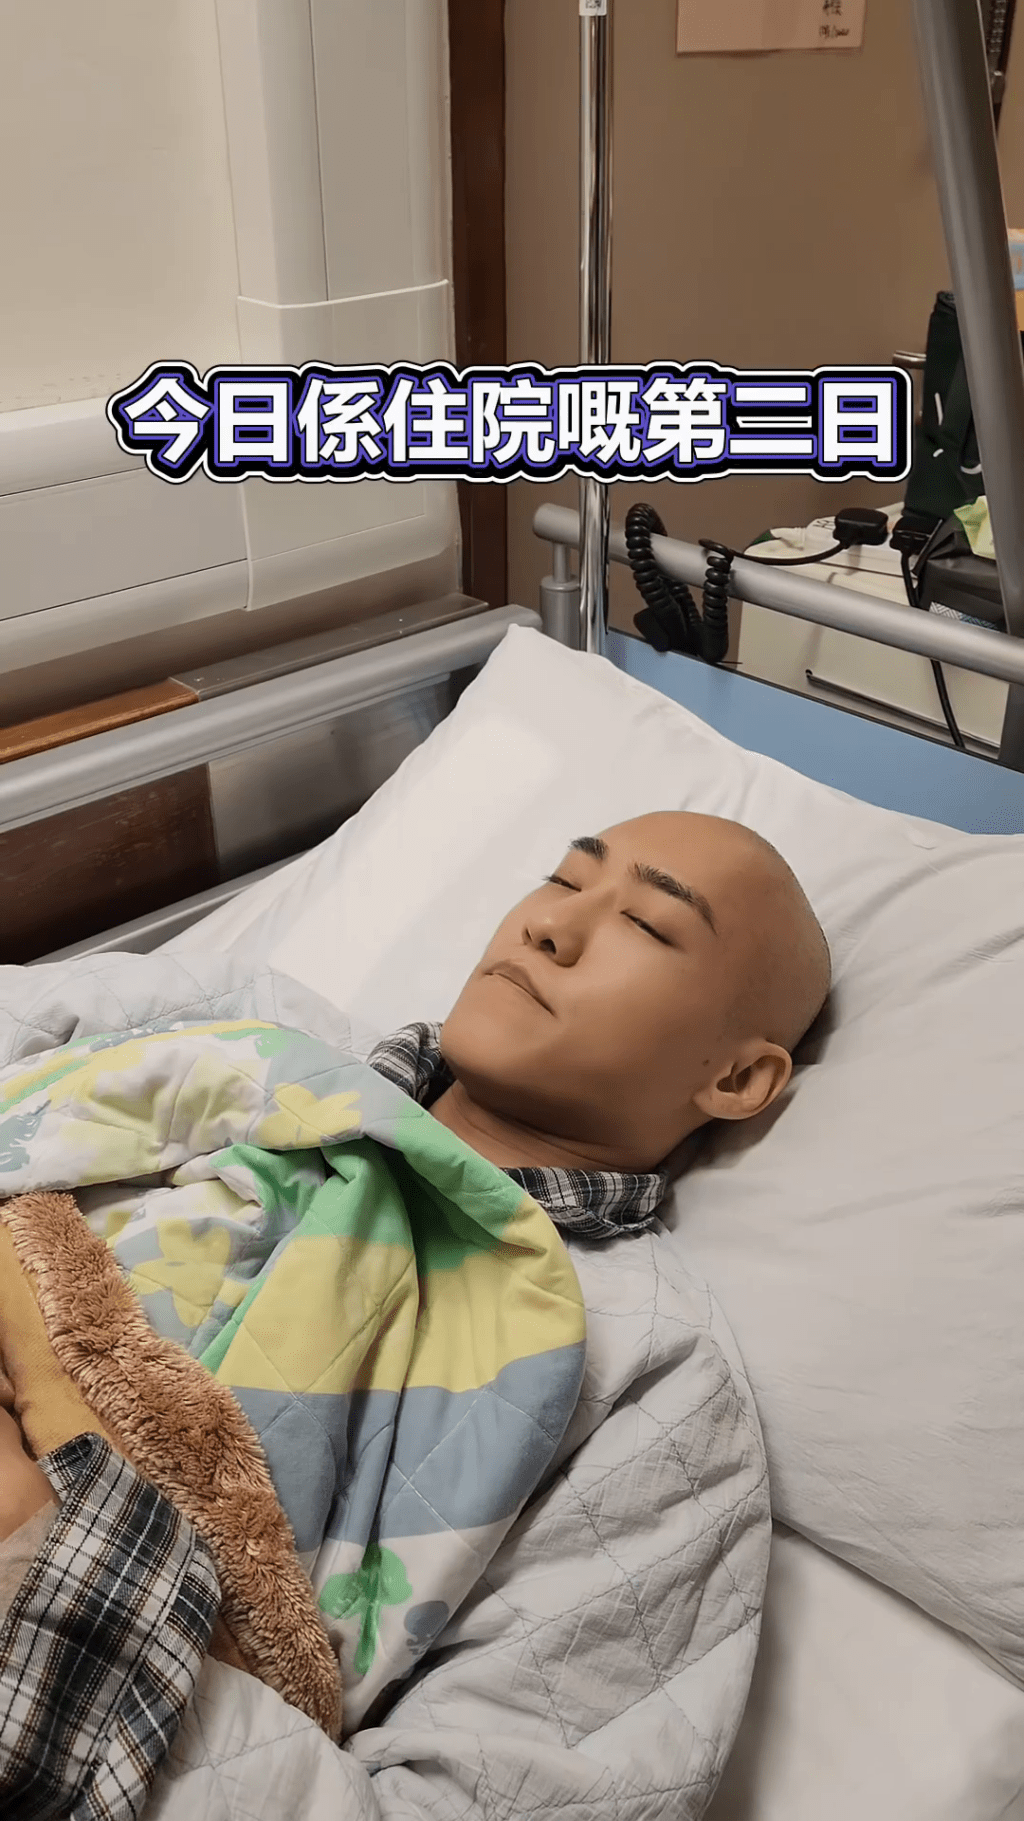 文颂男在住院第二天获好友探病。